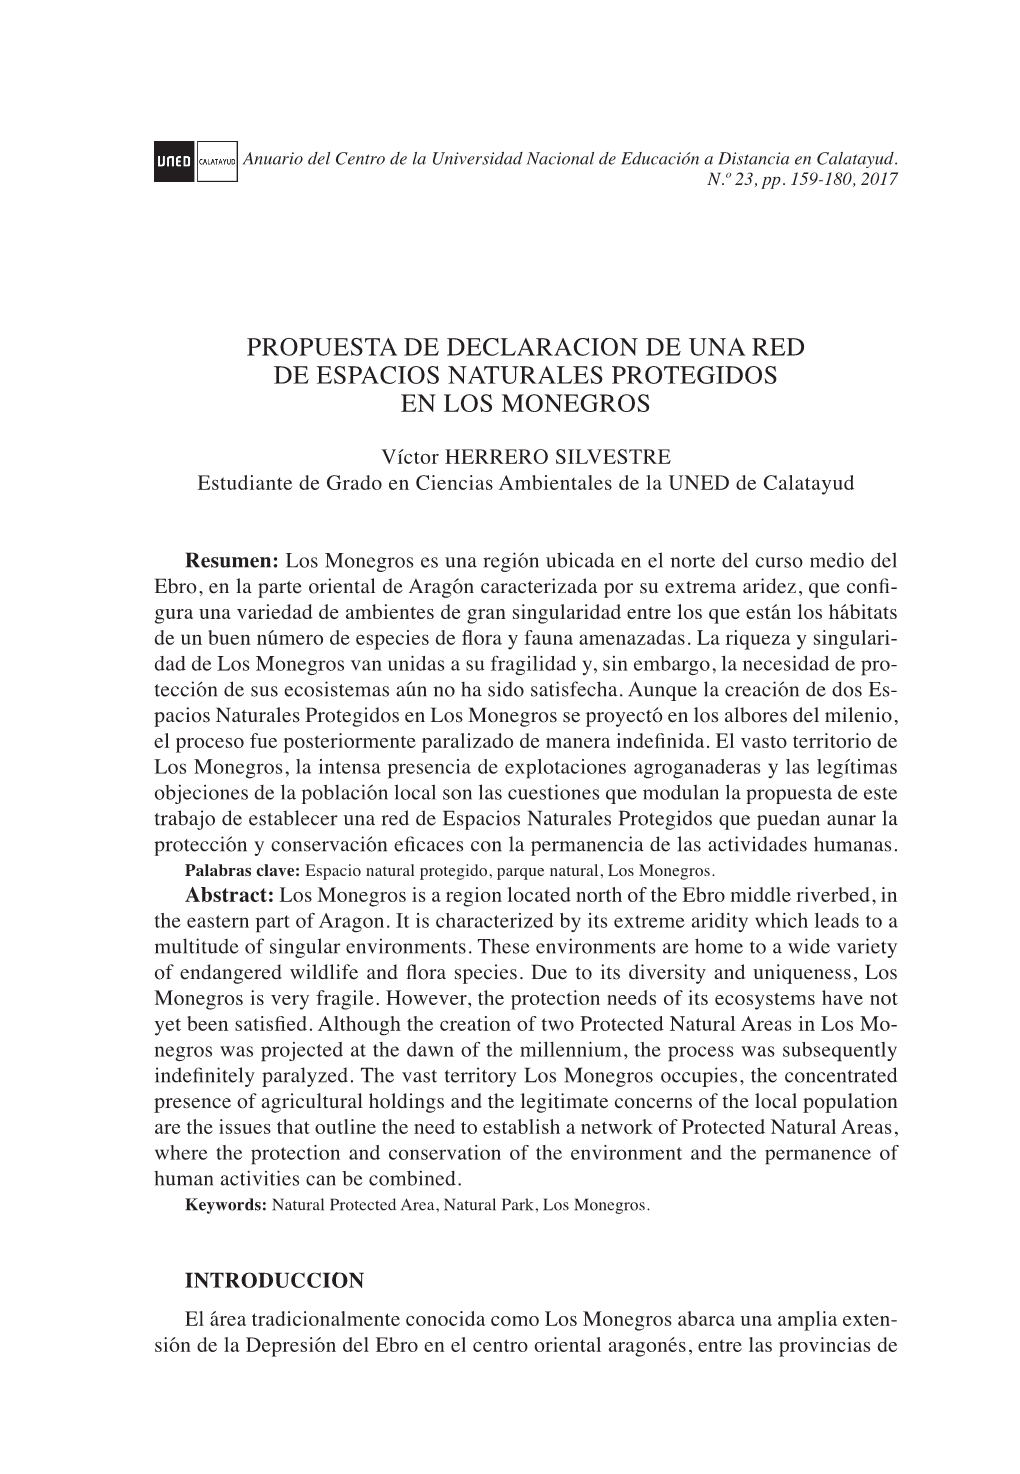 Propuesta De Declaración De Una Red De Espacios Naturales Protegidos En Los Monegros